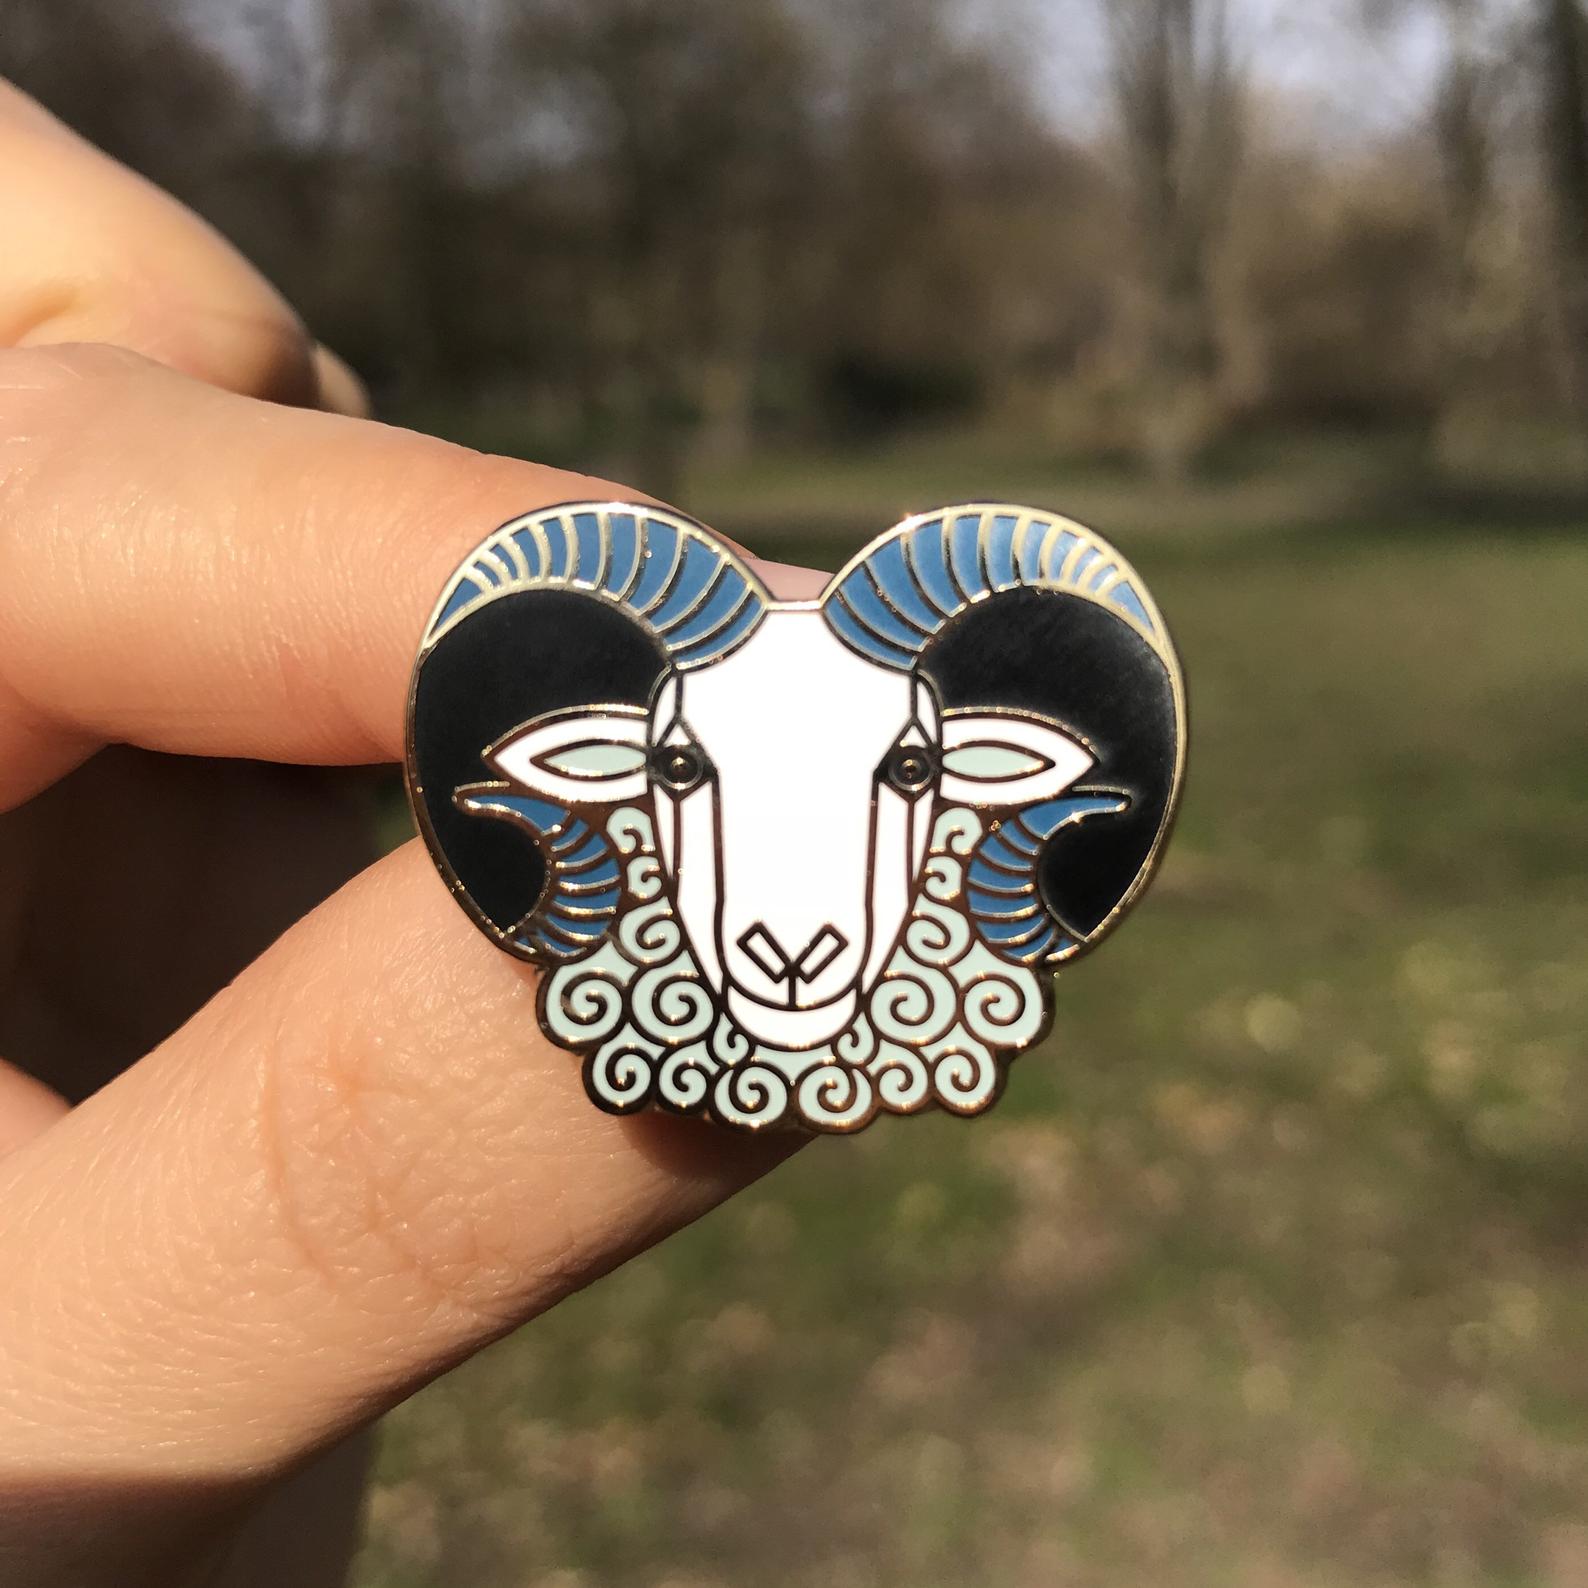 Sheep hard enamel pin